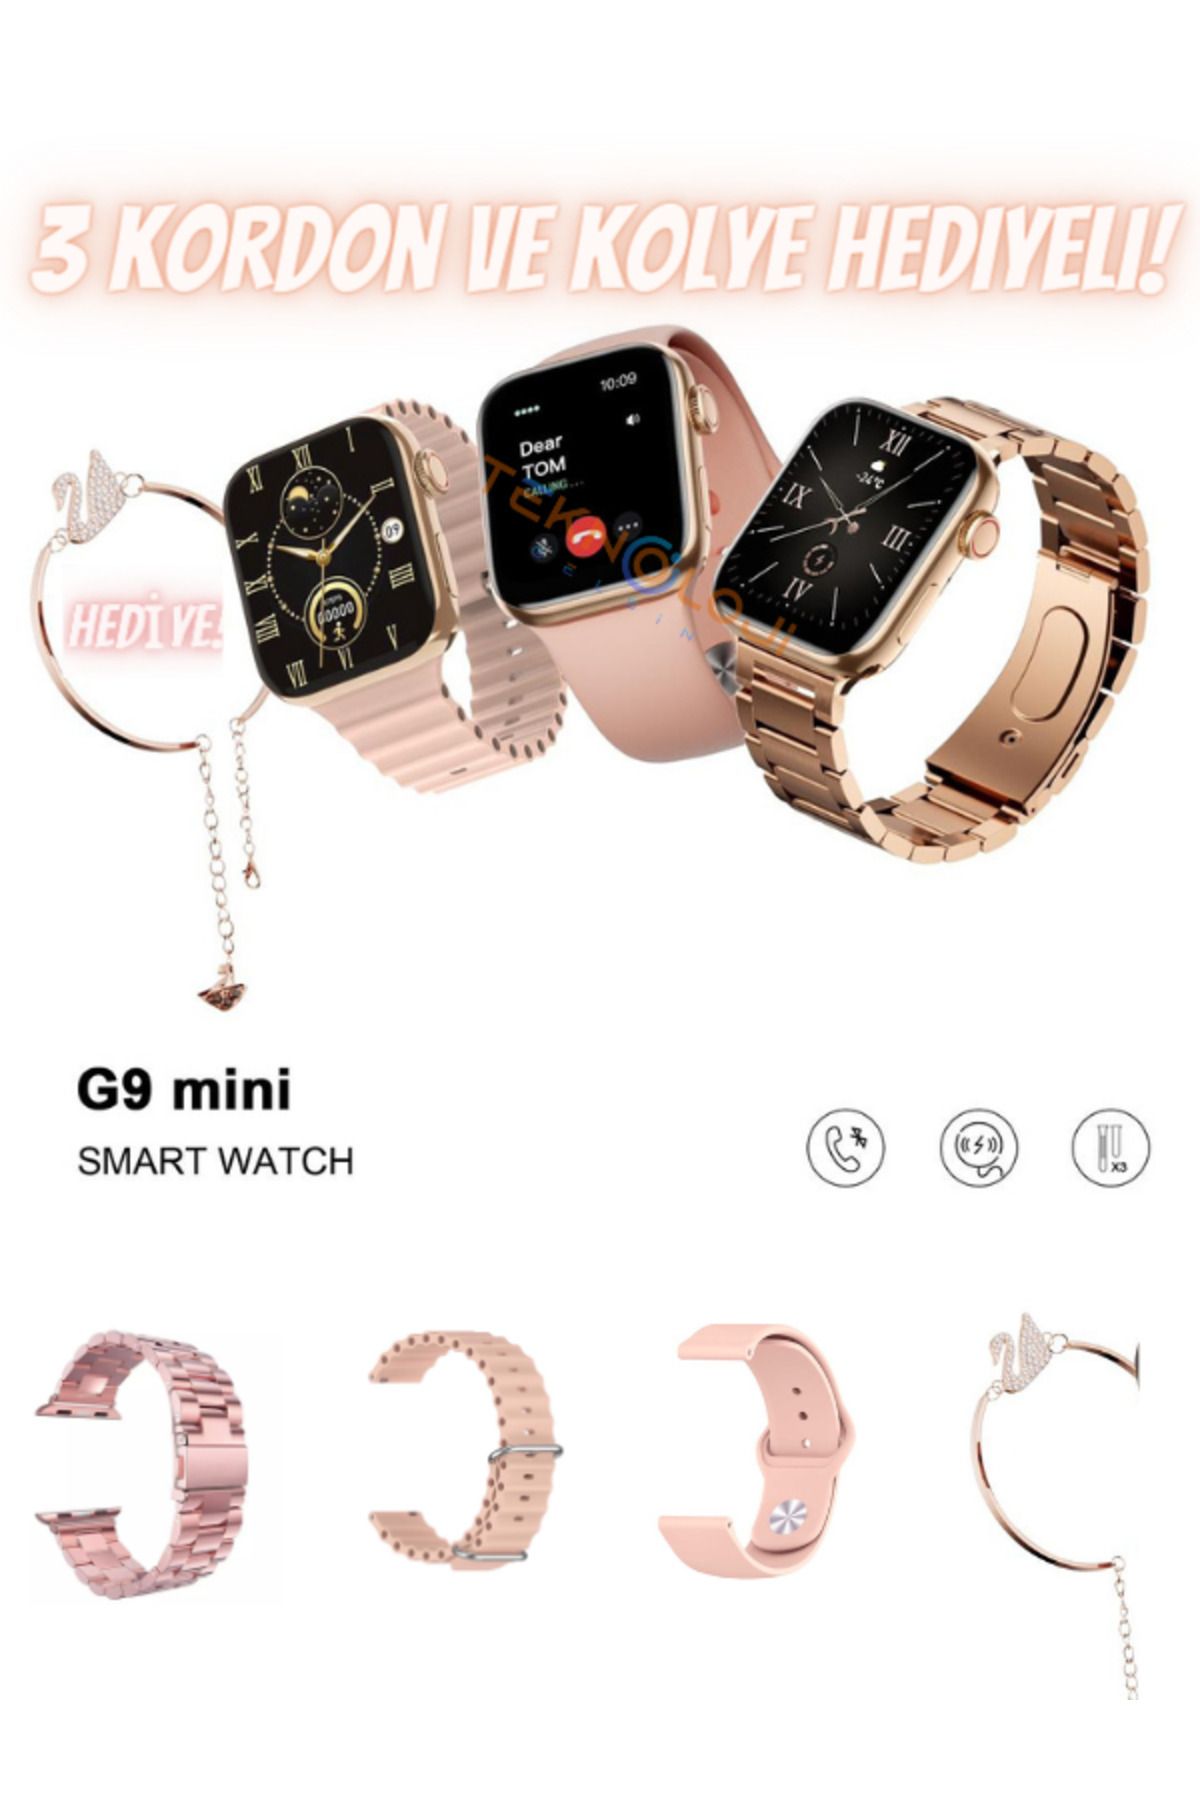 Teknoloji Gelsin Kadın Akıllı Saat Smart Watch G9 Mini Flamingo Kolye Hediyeli Ios ve Android Uyumlu 38mm 2.2inç